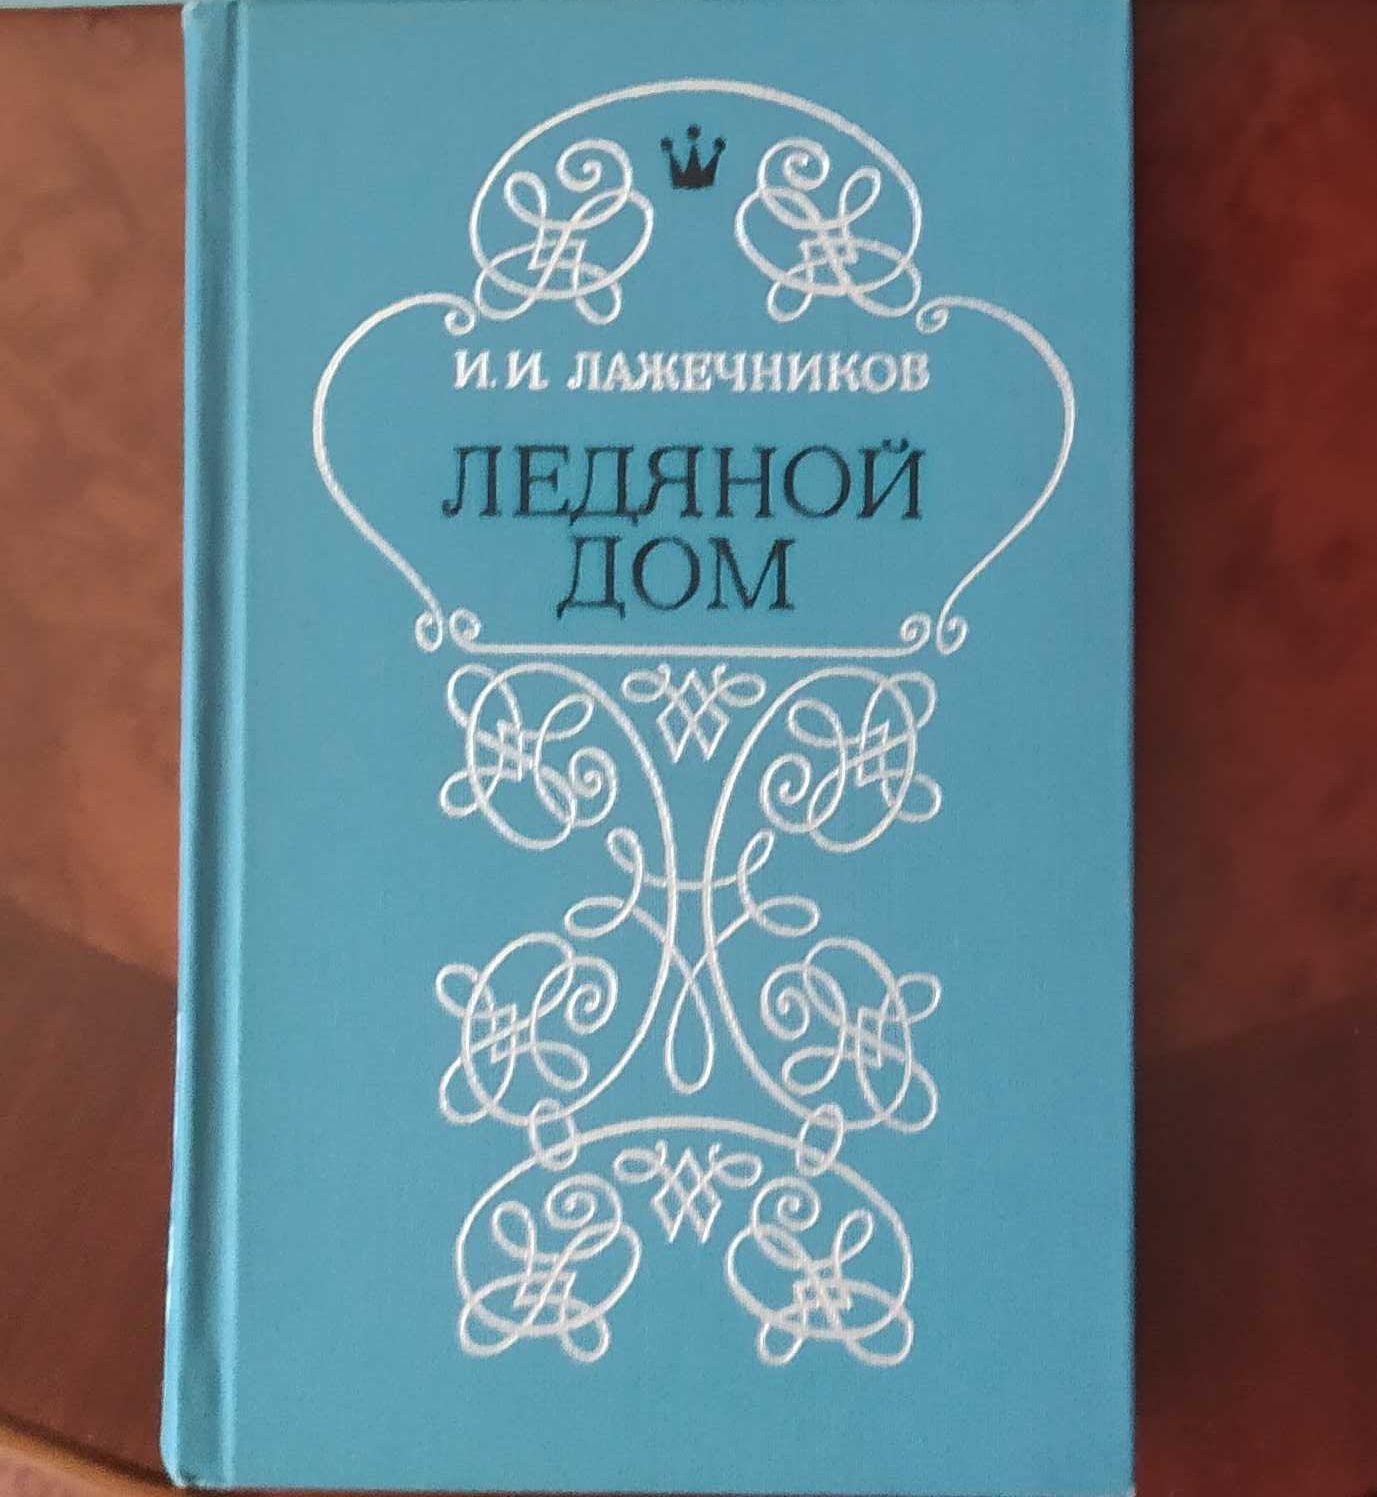 Книга,книги Г.П.Данилевский«Княжна Тараканова»,«Сожженная Москва»1986